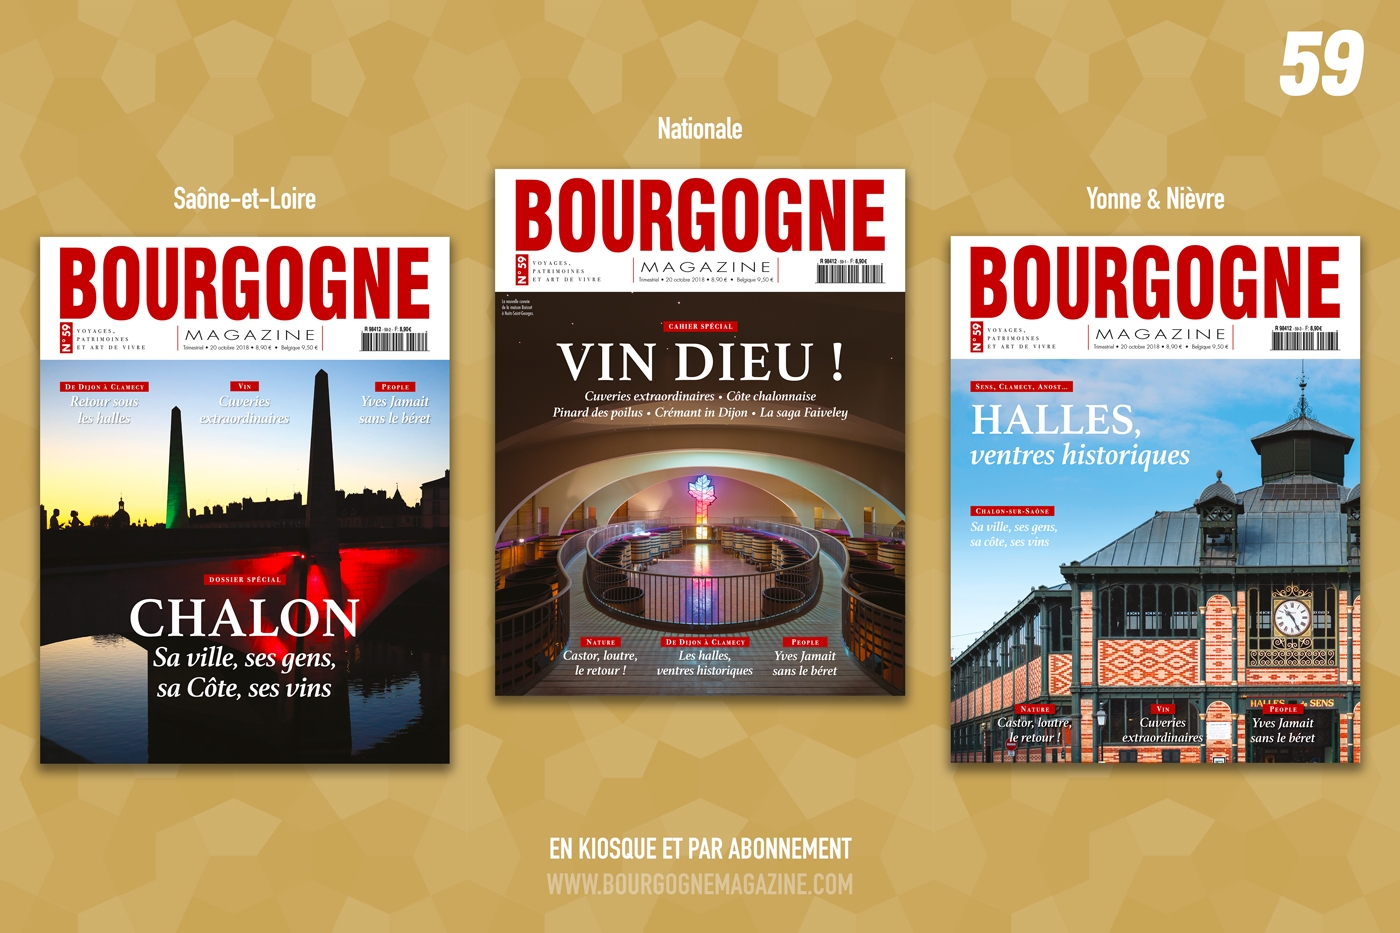 Vin dieu ! Bourgogne Magazine trinque à Chalon et sous les halles